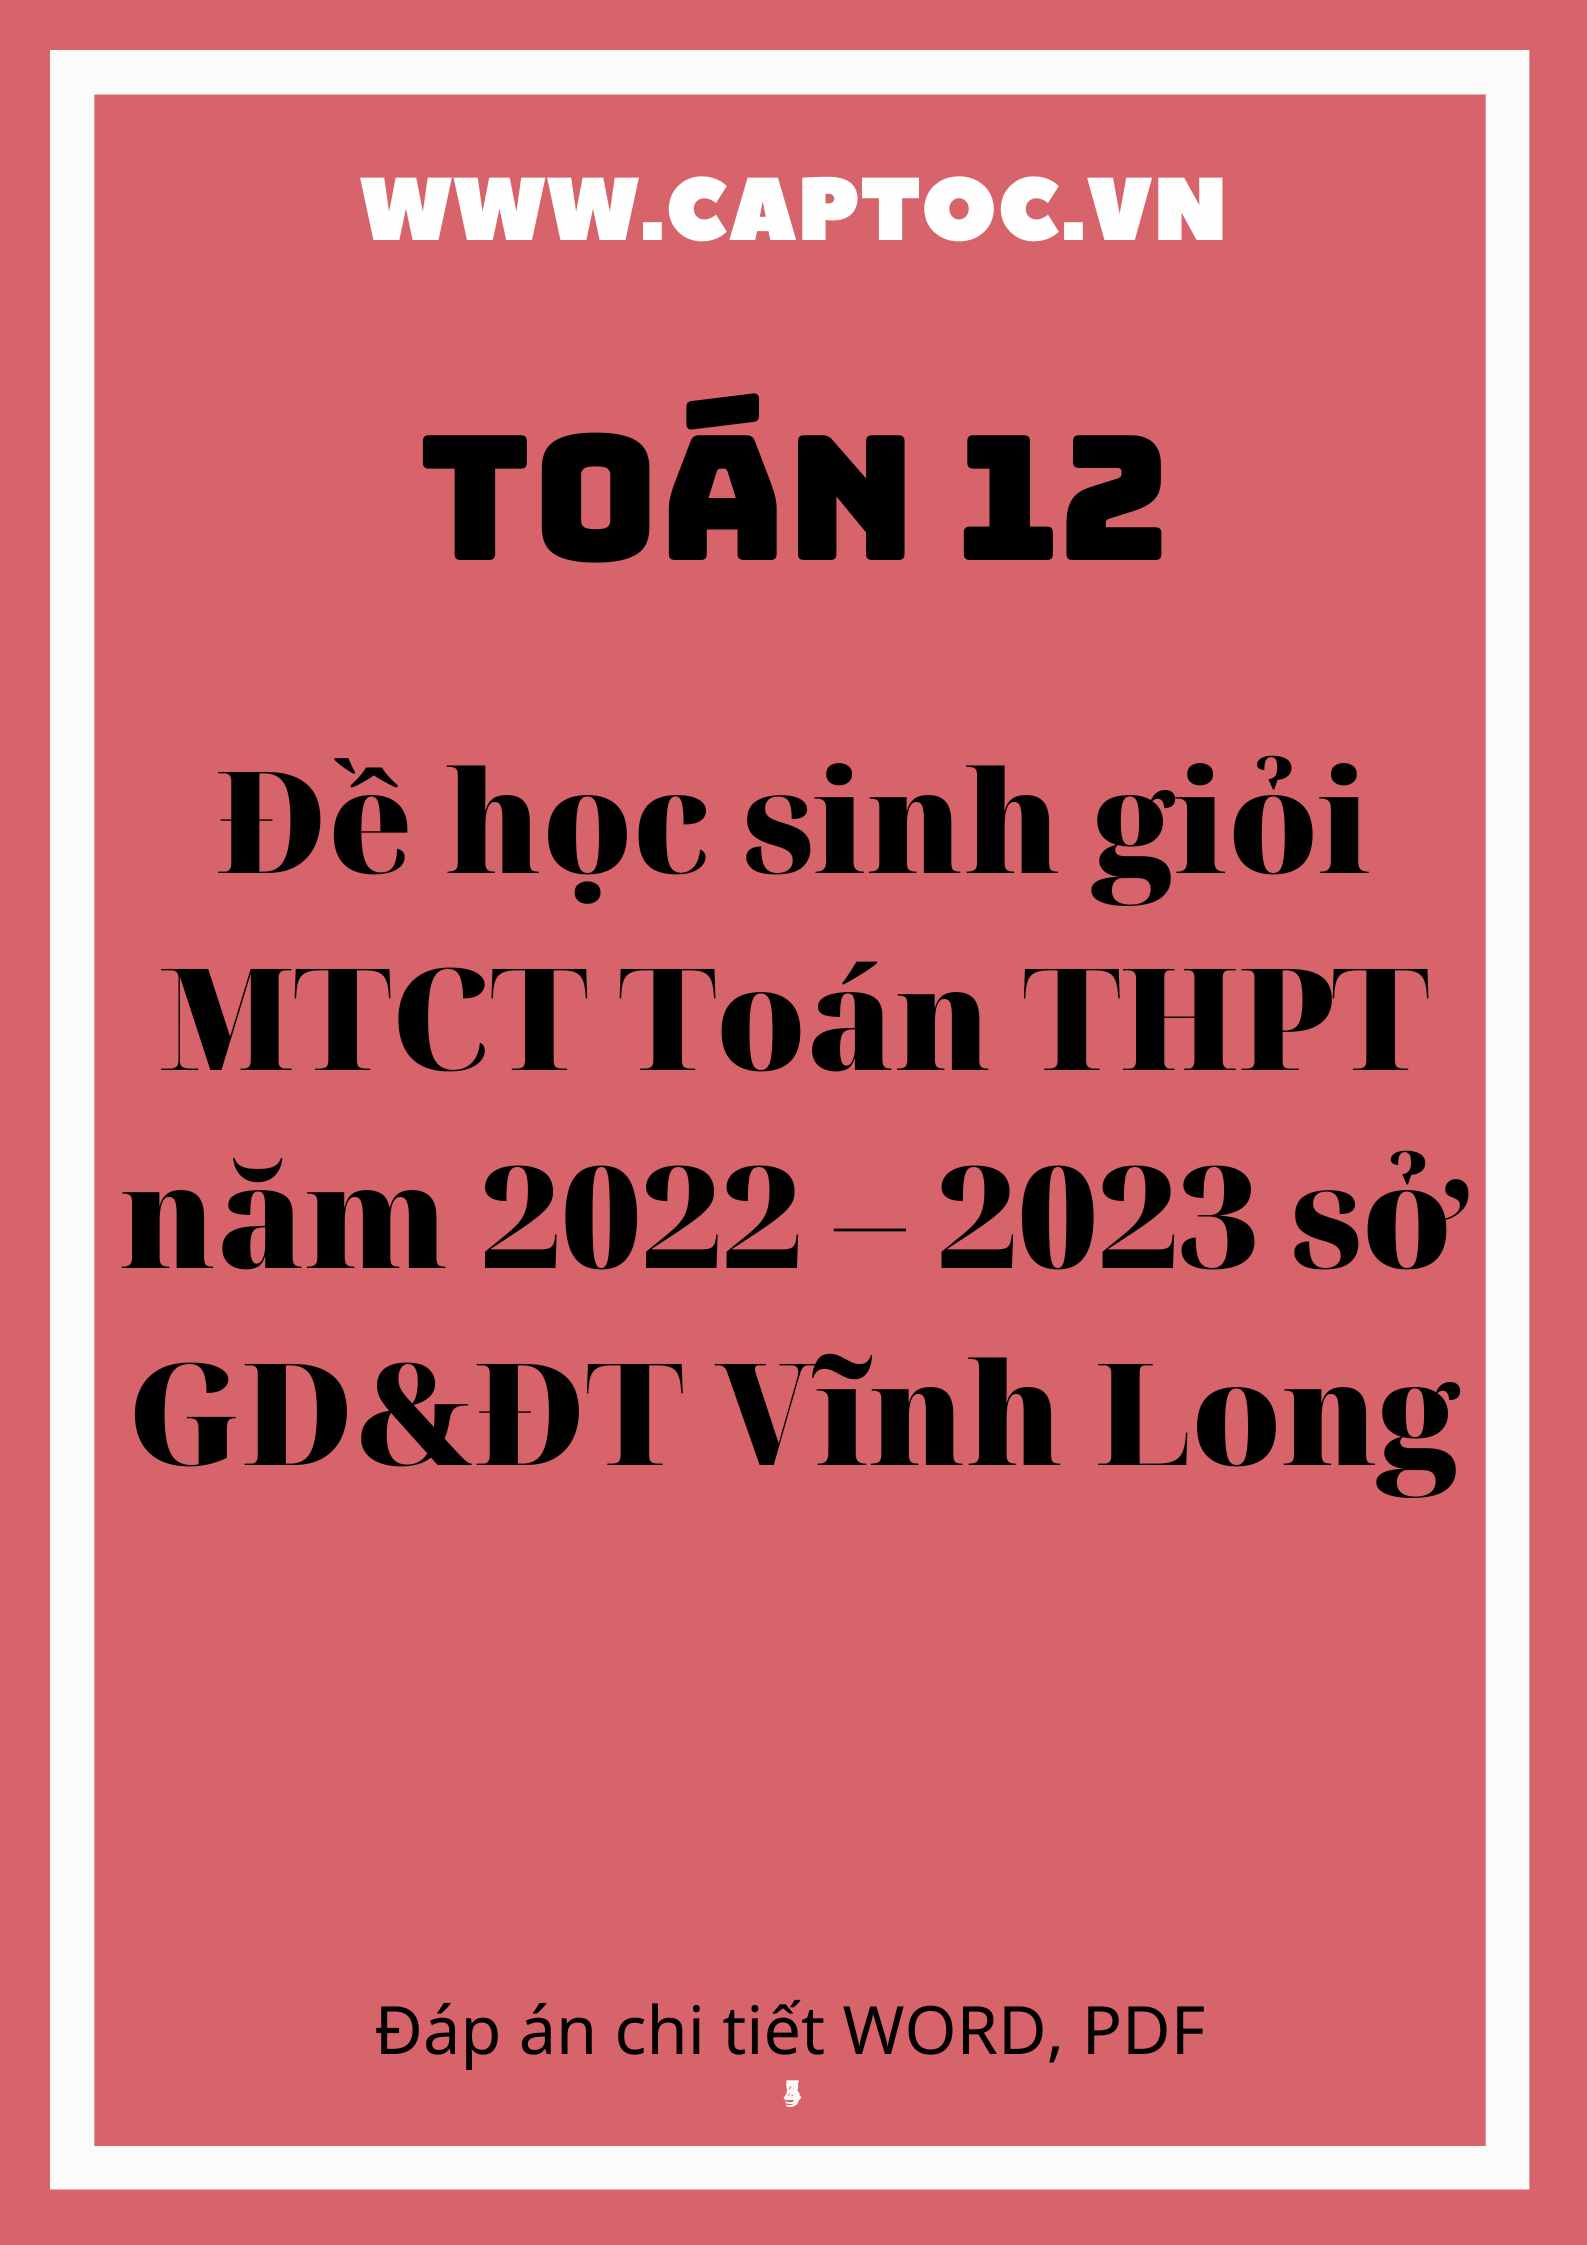 Đề HSG MTCT Toán THPT năm 2022 – 2023 sở GD&ĐT Vĩnh Long